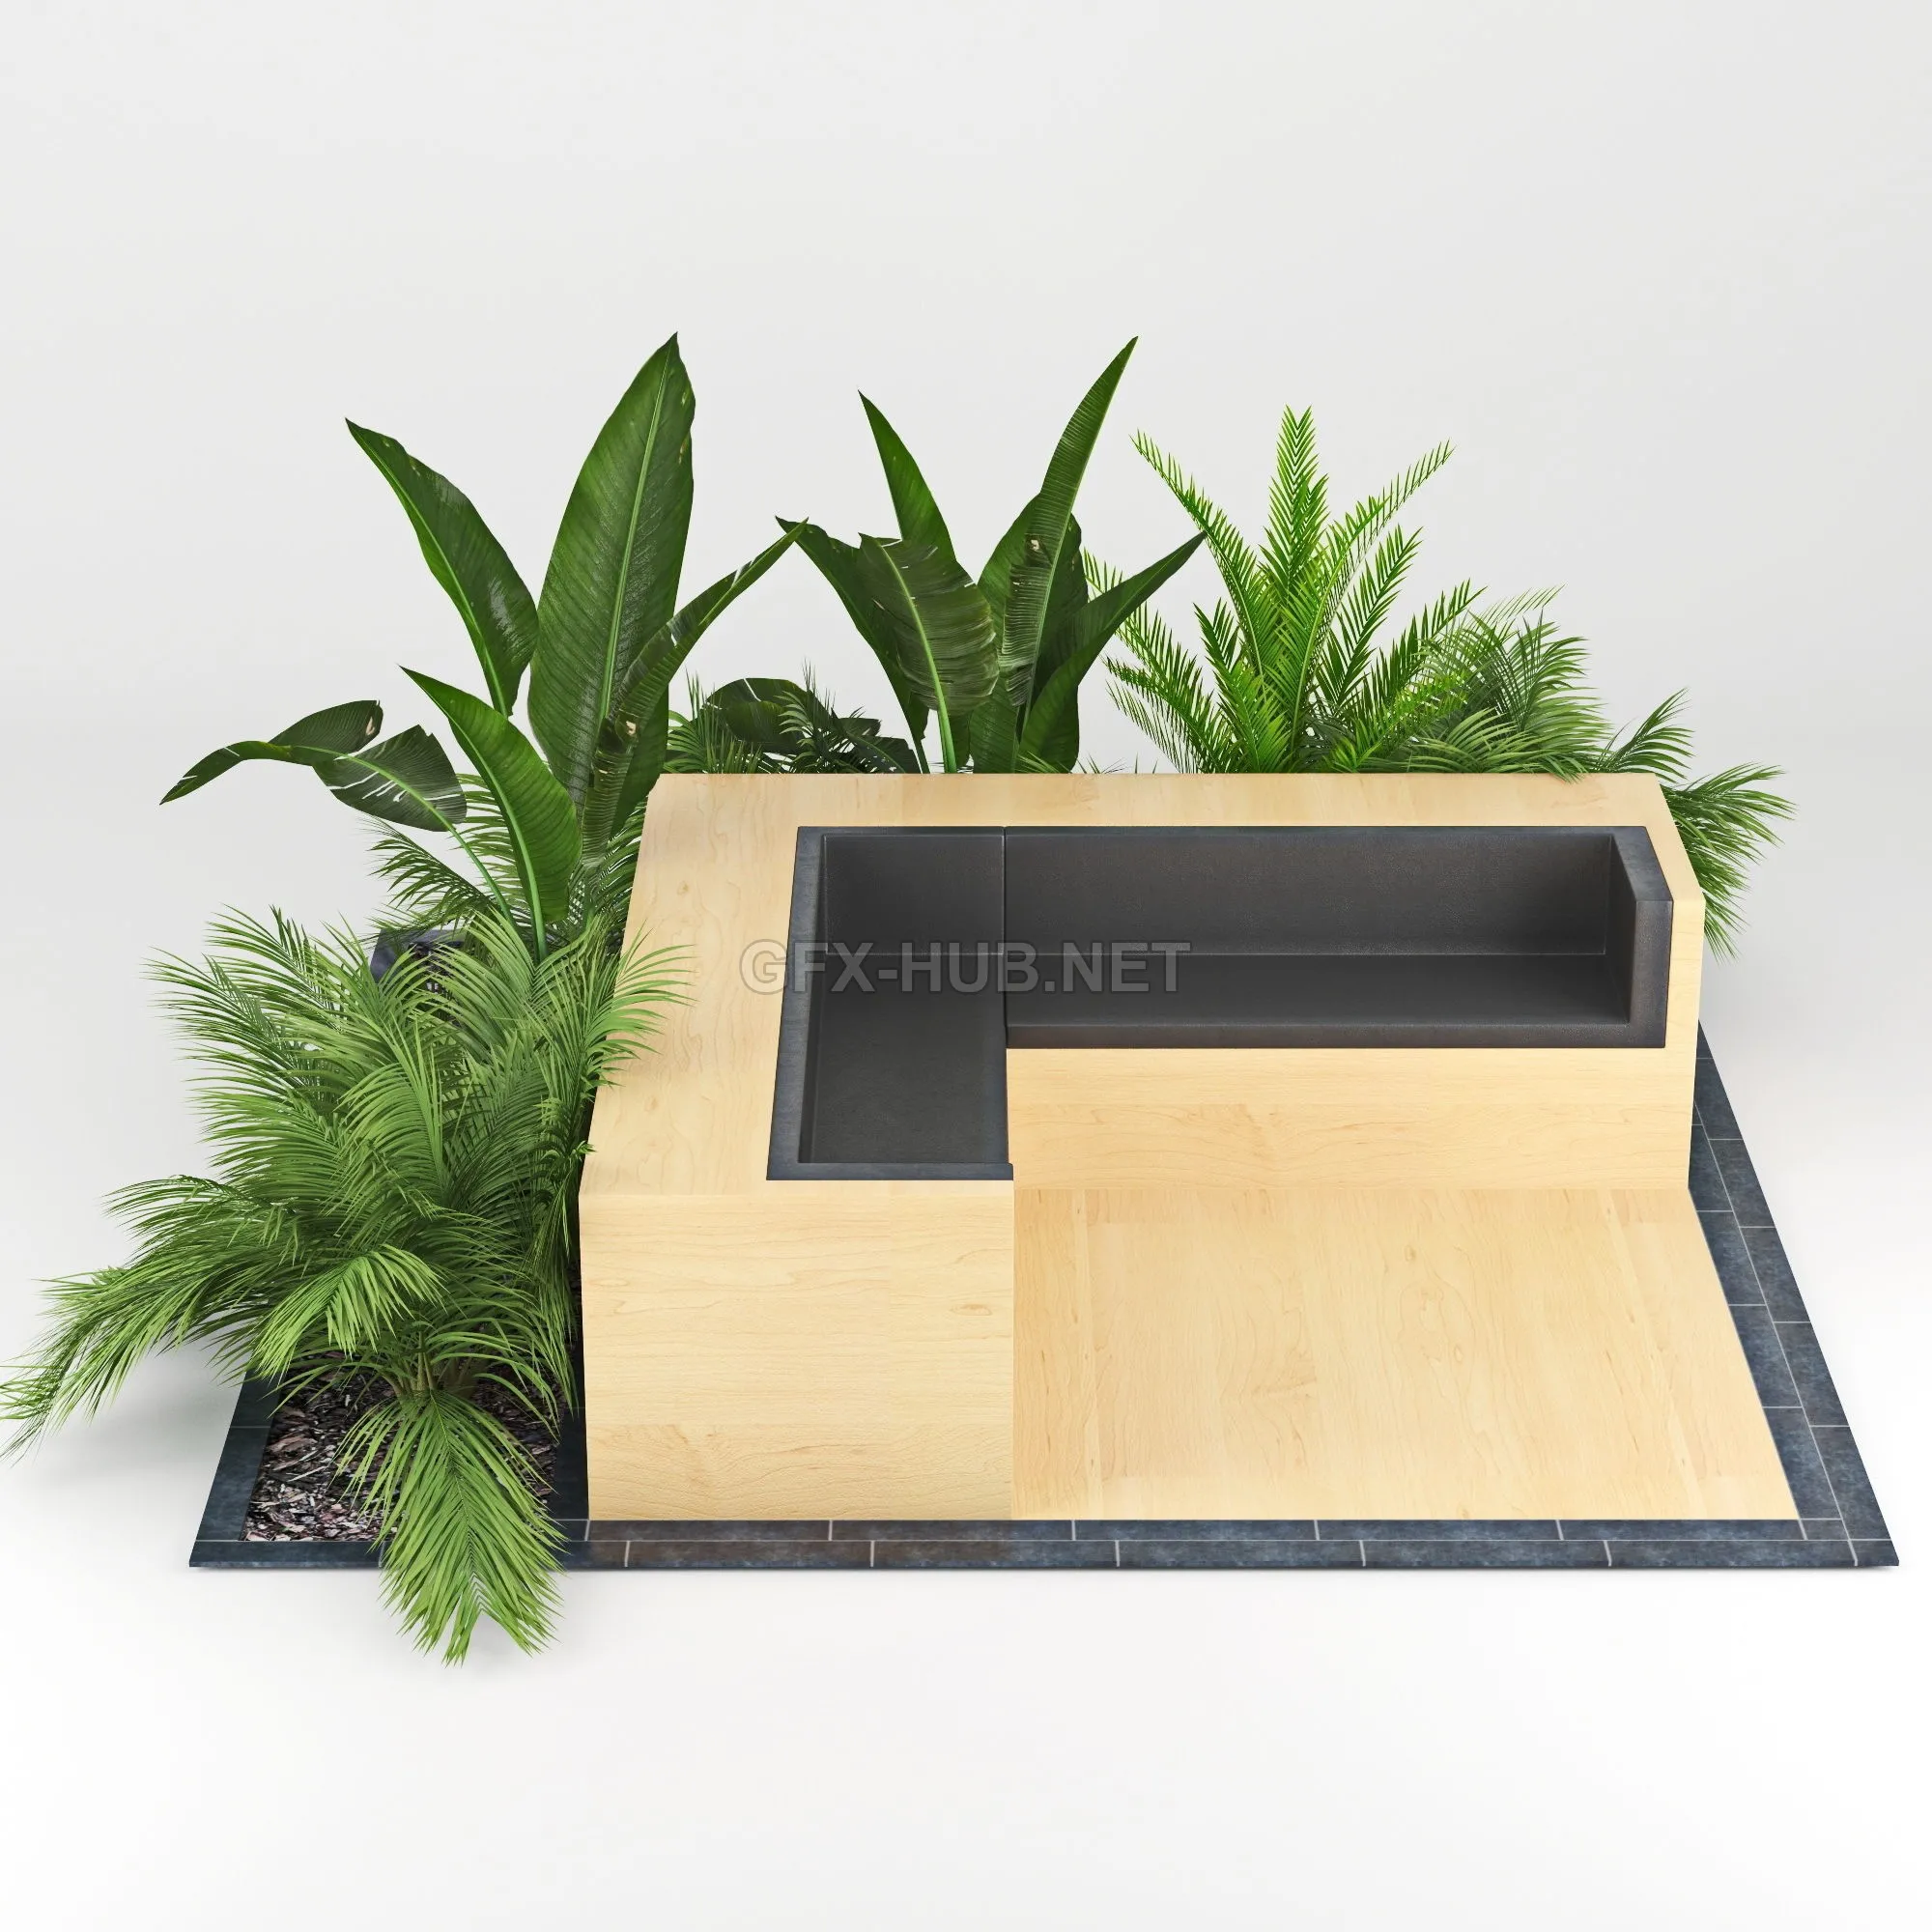 FURNITURE 3D MODELS – Flowerbed palm